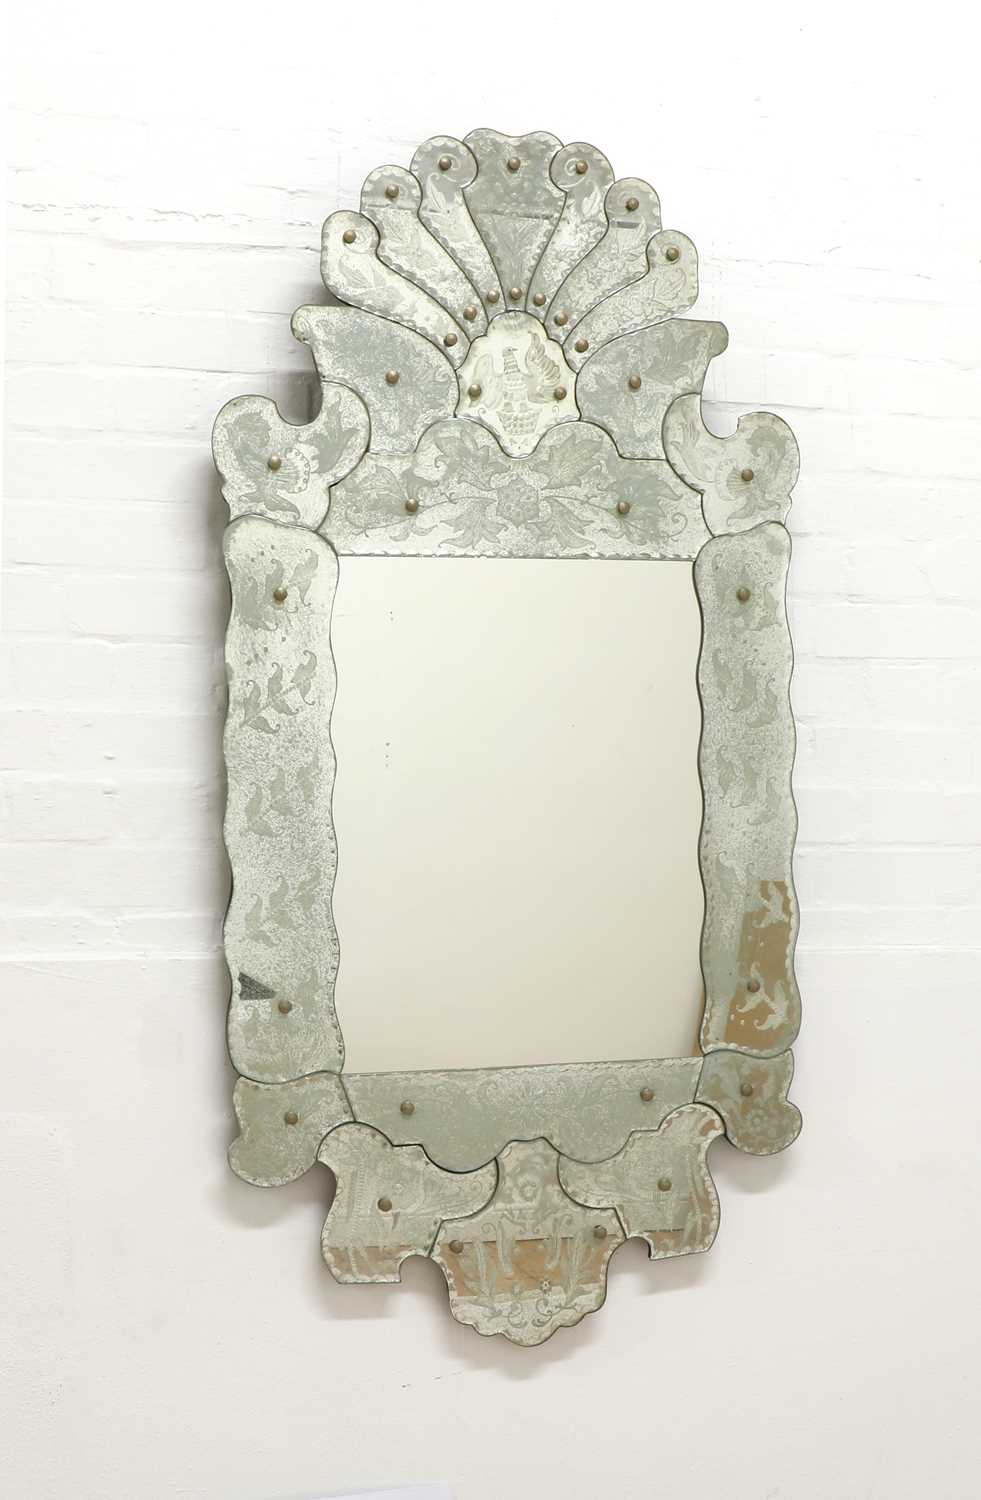 Lot 620 - A Venetian-style mirror